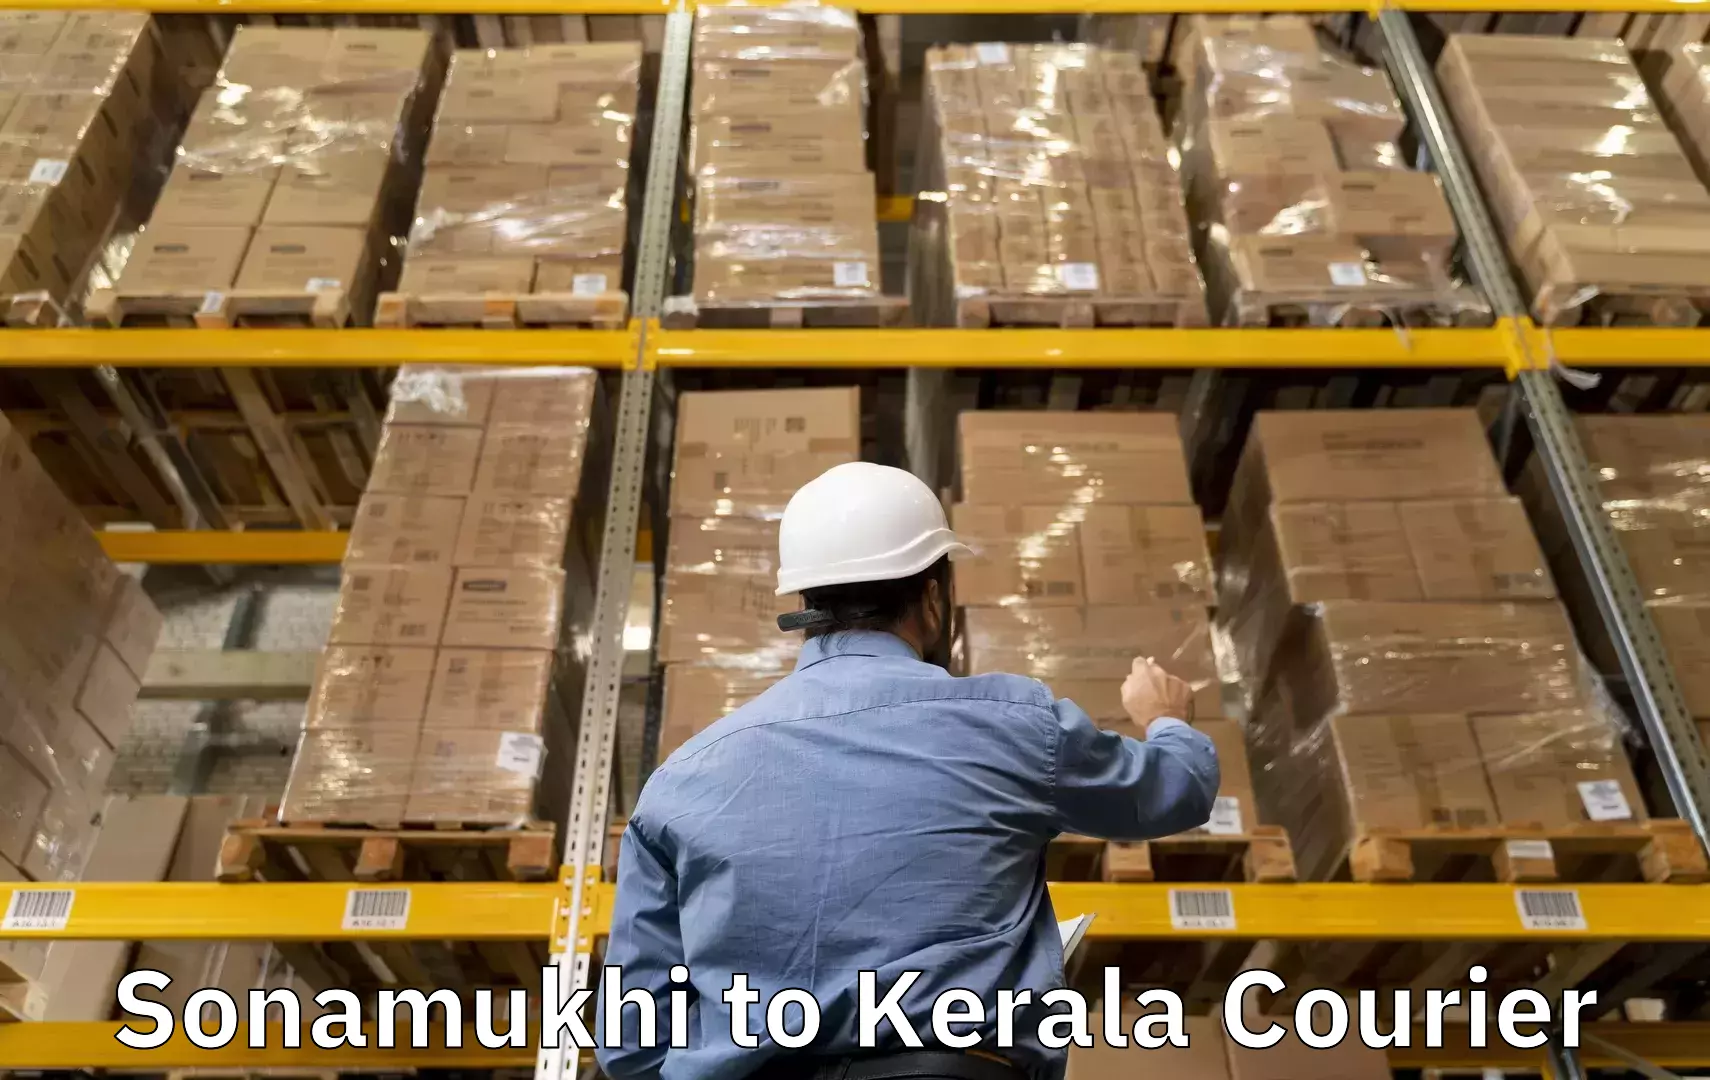 Baggage shipping schedule Sonamukhi to IIIT Kottayam